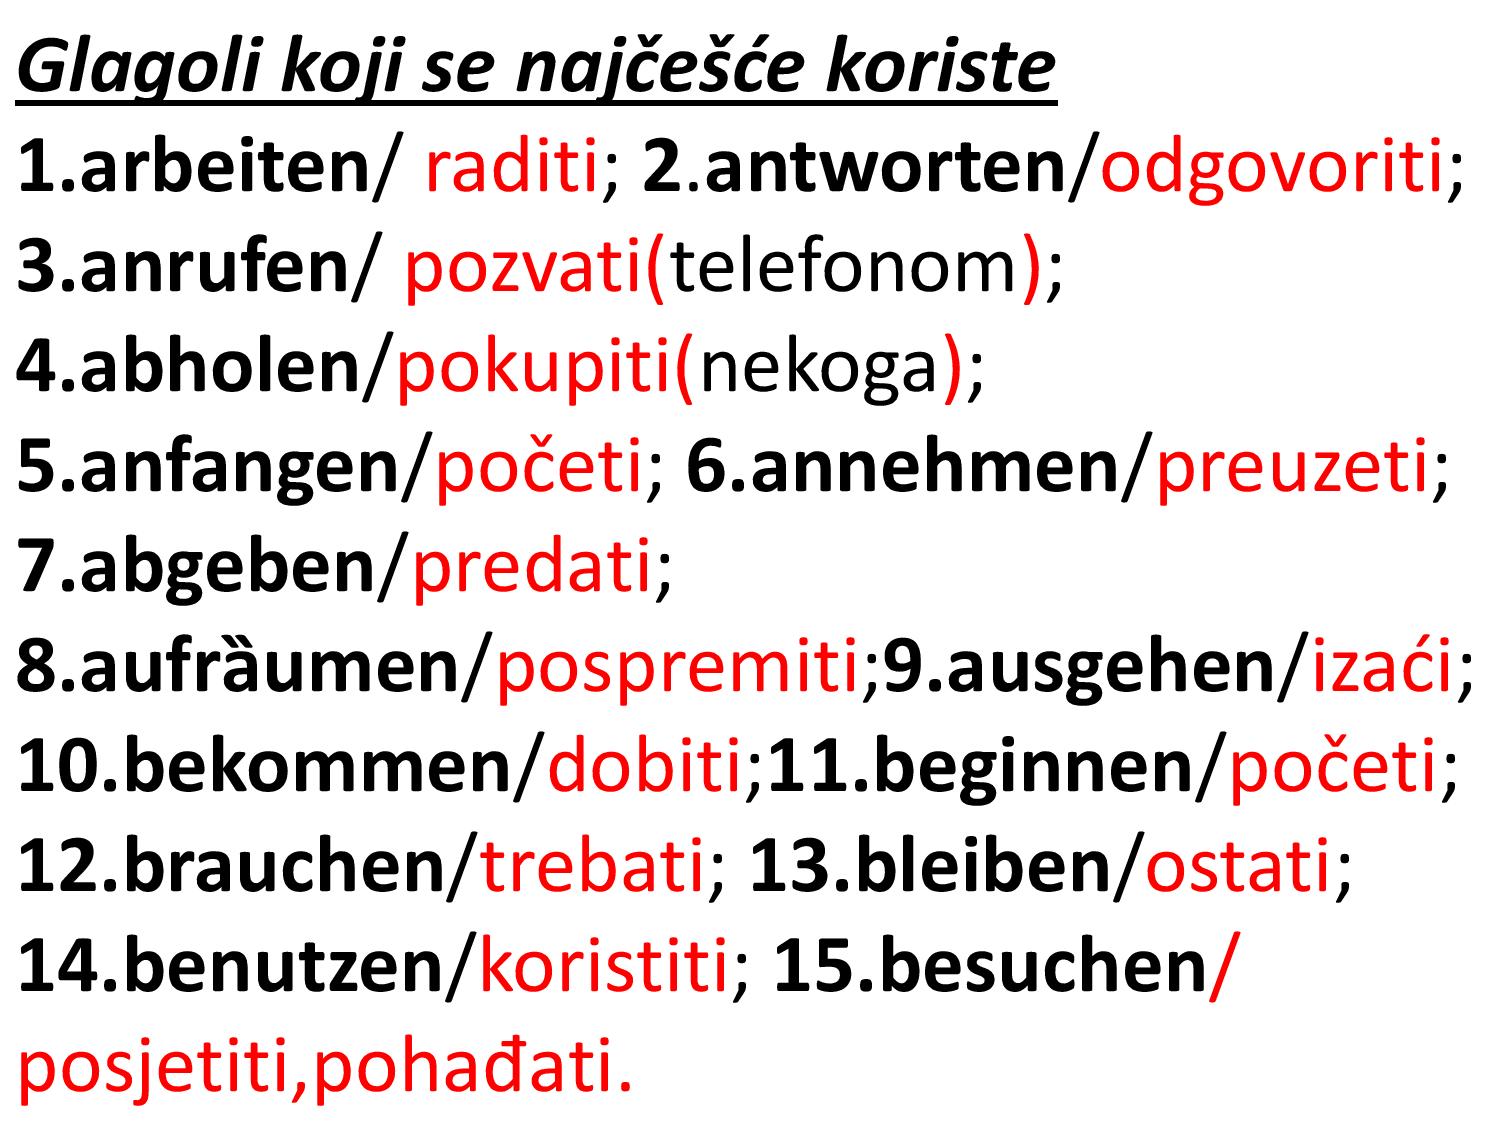 Glagoli koji se najcesce koriste 1 page 001 - Glagoli koji se najčešće koriste u njemačkom jeziku